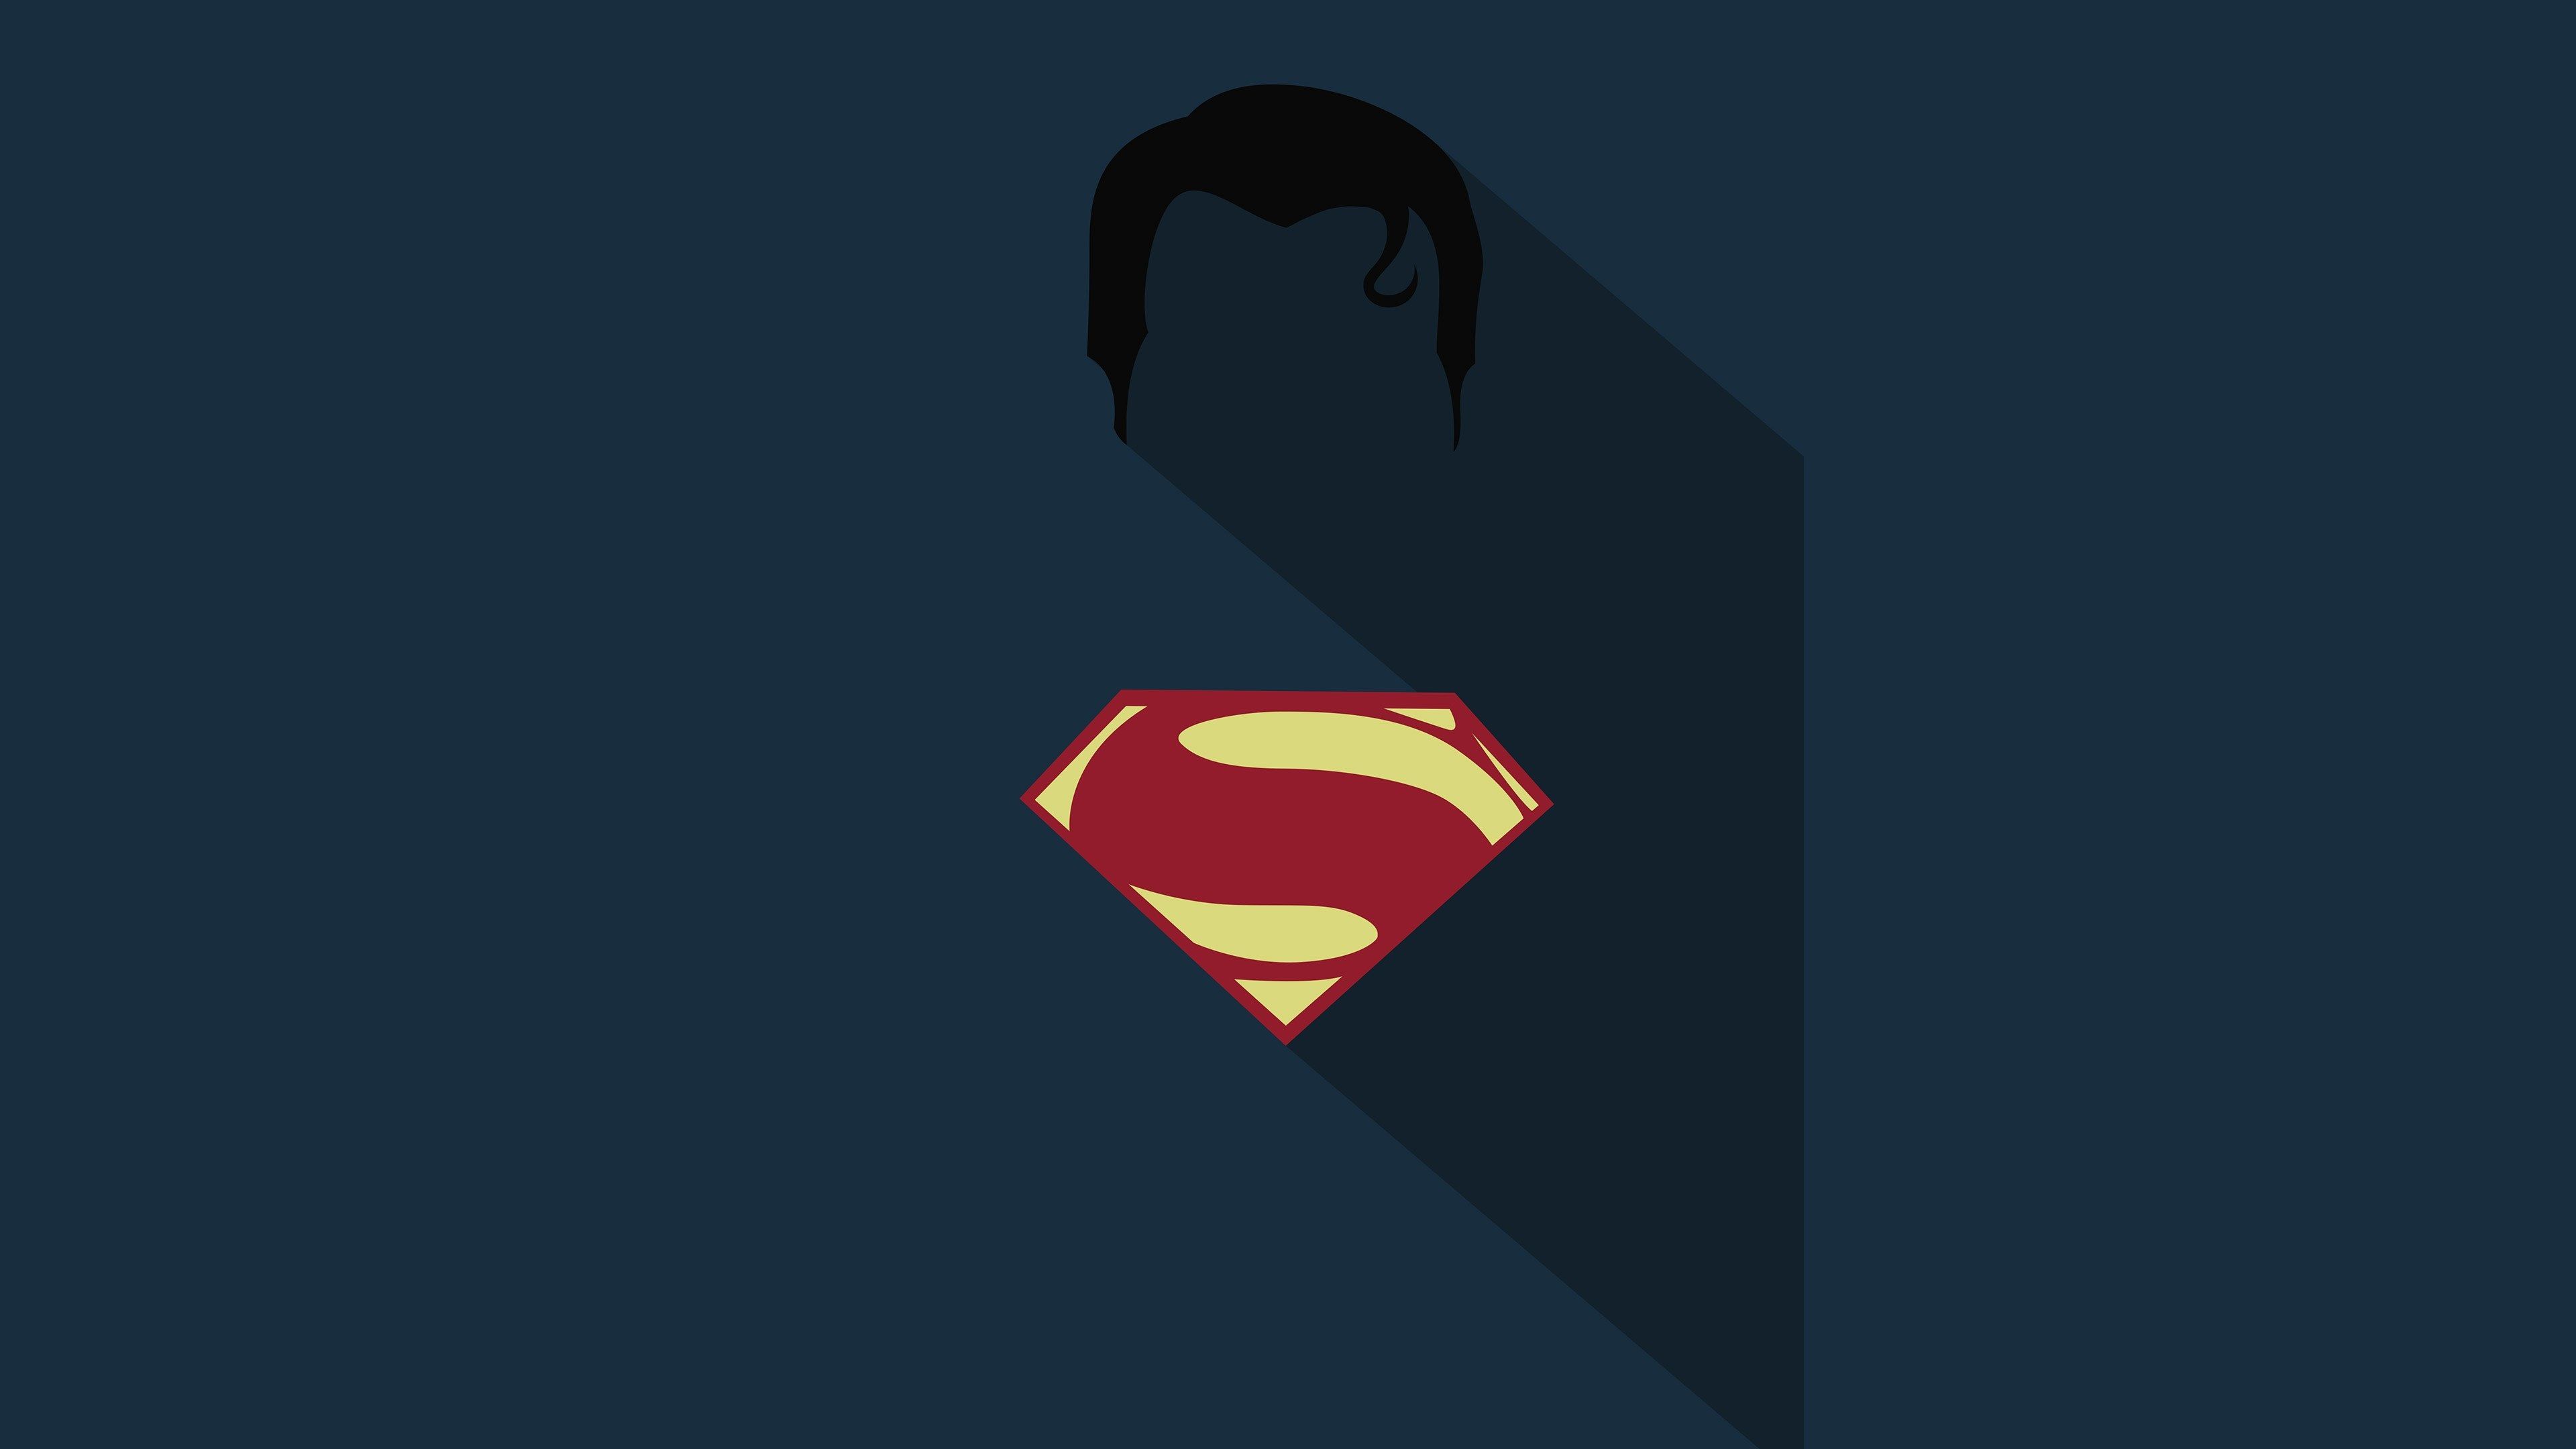 superman 4k background desktop. Superman wallpaper, Superhero wallpaper, Superman wallpaper logo